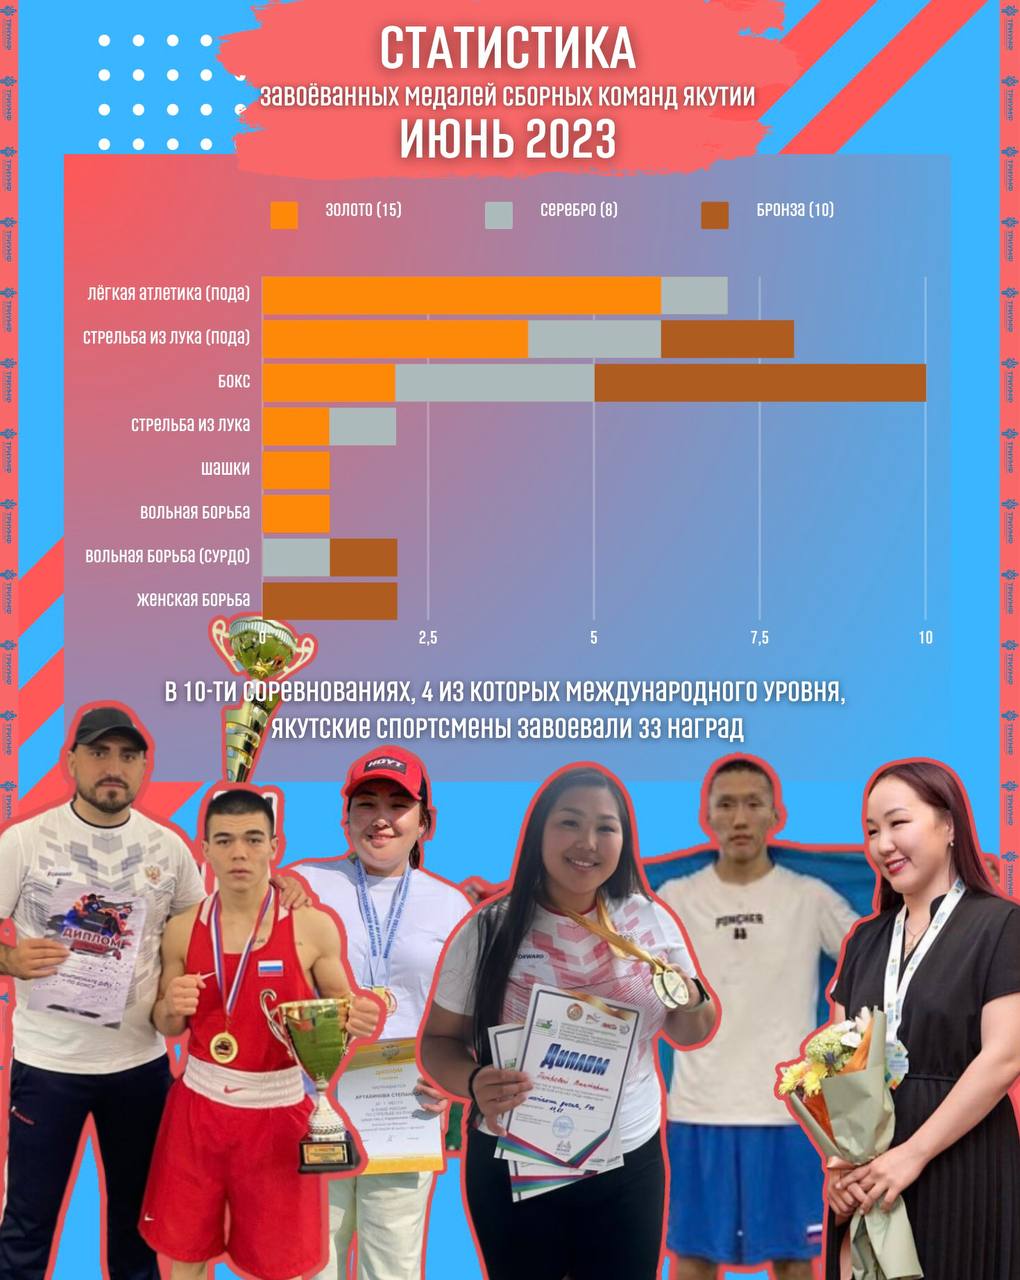 33 медали завоевали спортсмены сборных команд Якутии в июне